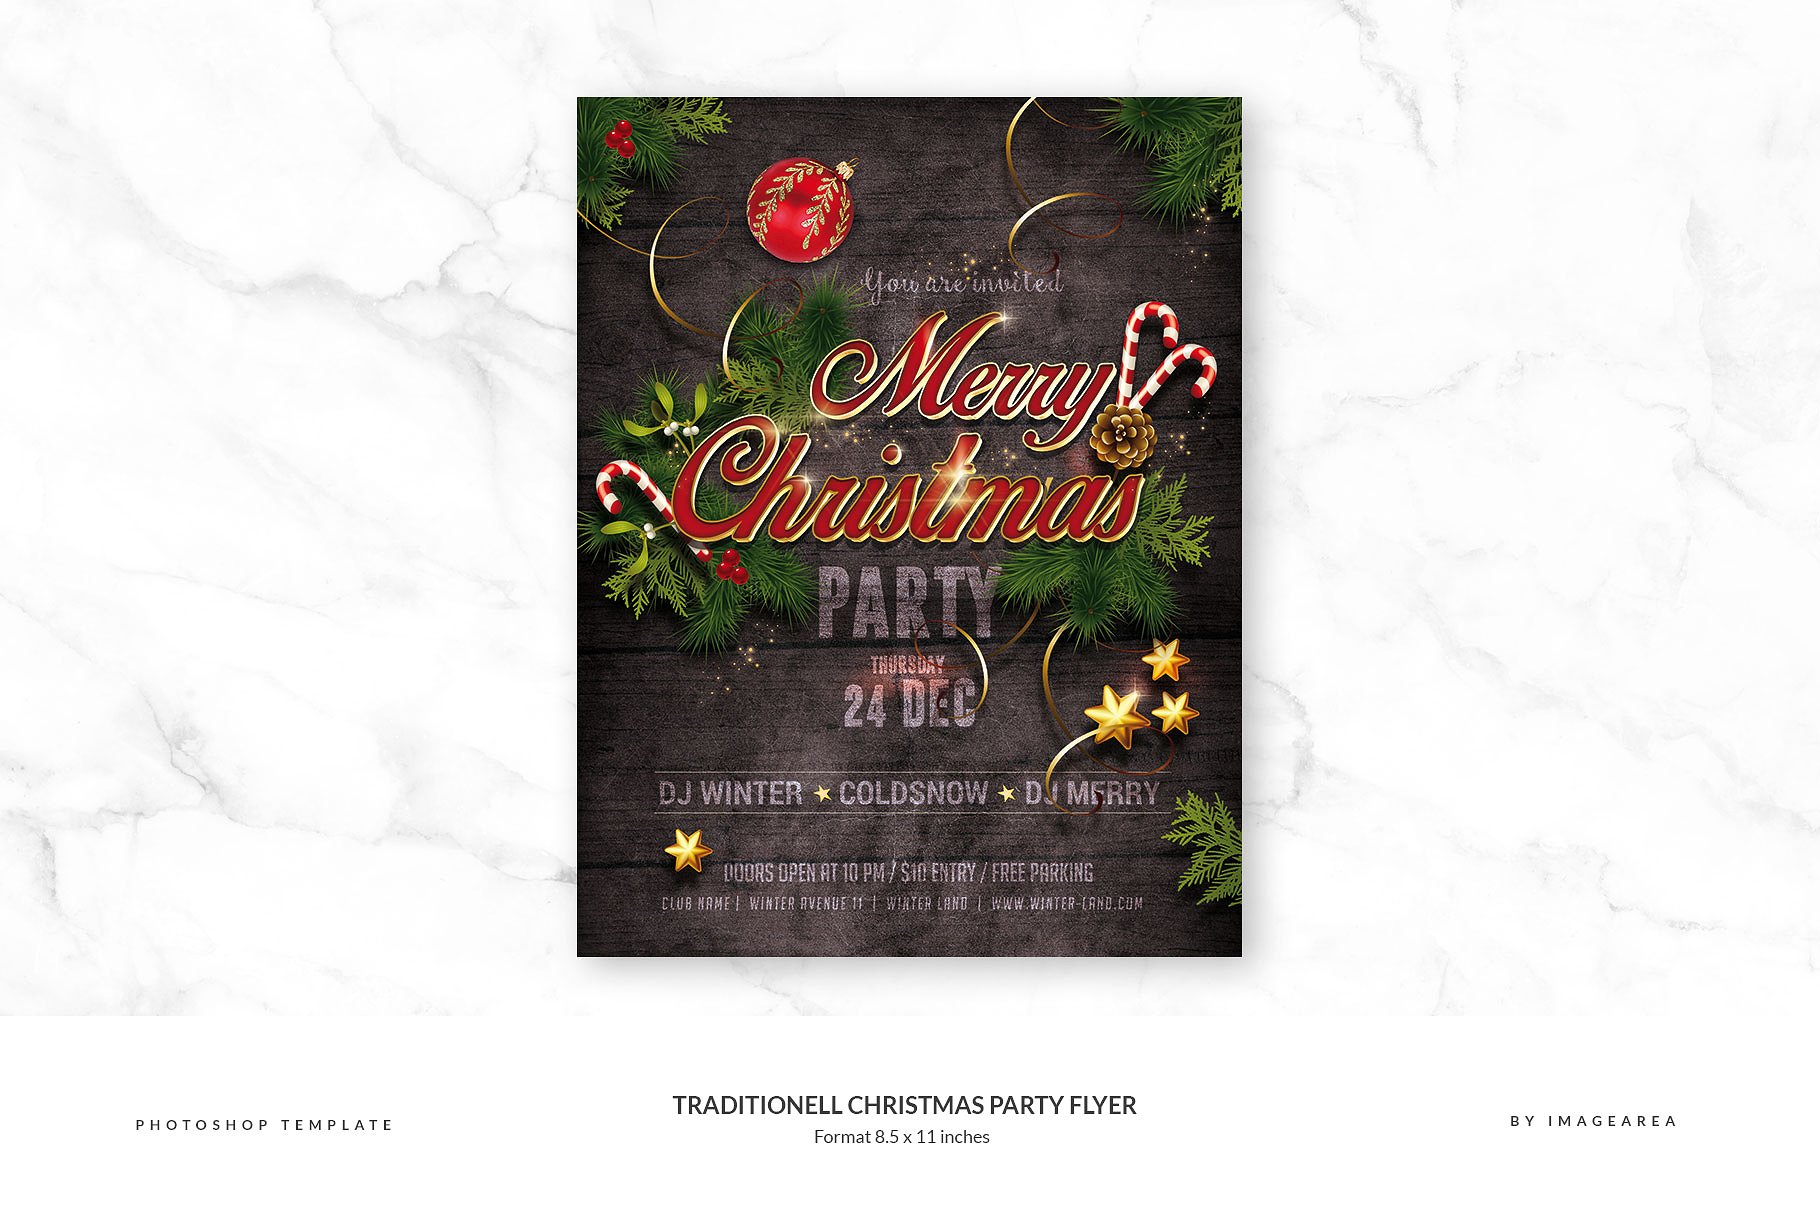 圣诞派对传单PSD模板 Traditionell Christmas Party Flyer插图